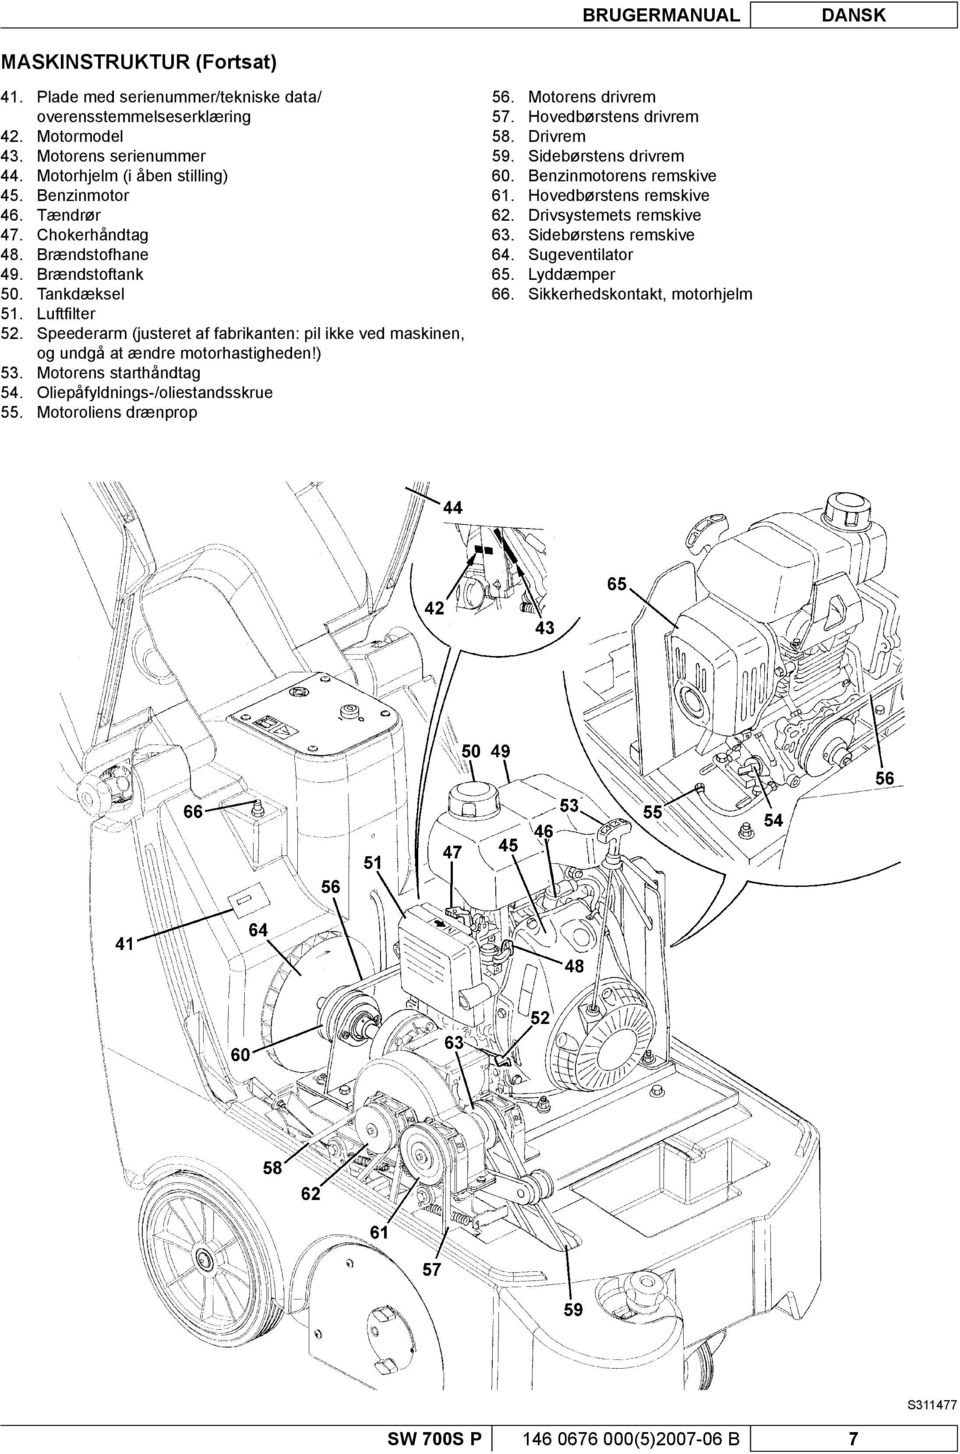 Luftfi lter Speederarm (justeret af fabrikanten: pil ikke ved maskinen, og undgå at ændre motorhastigheden!) Motorens starthåndtag Oliepåfyldnings-/oliestandsskrue Motoroliens drænprop 56. 57. 58.